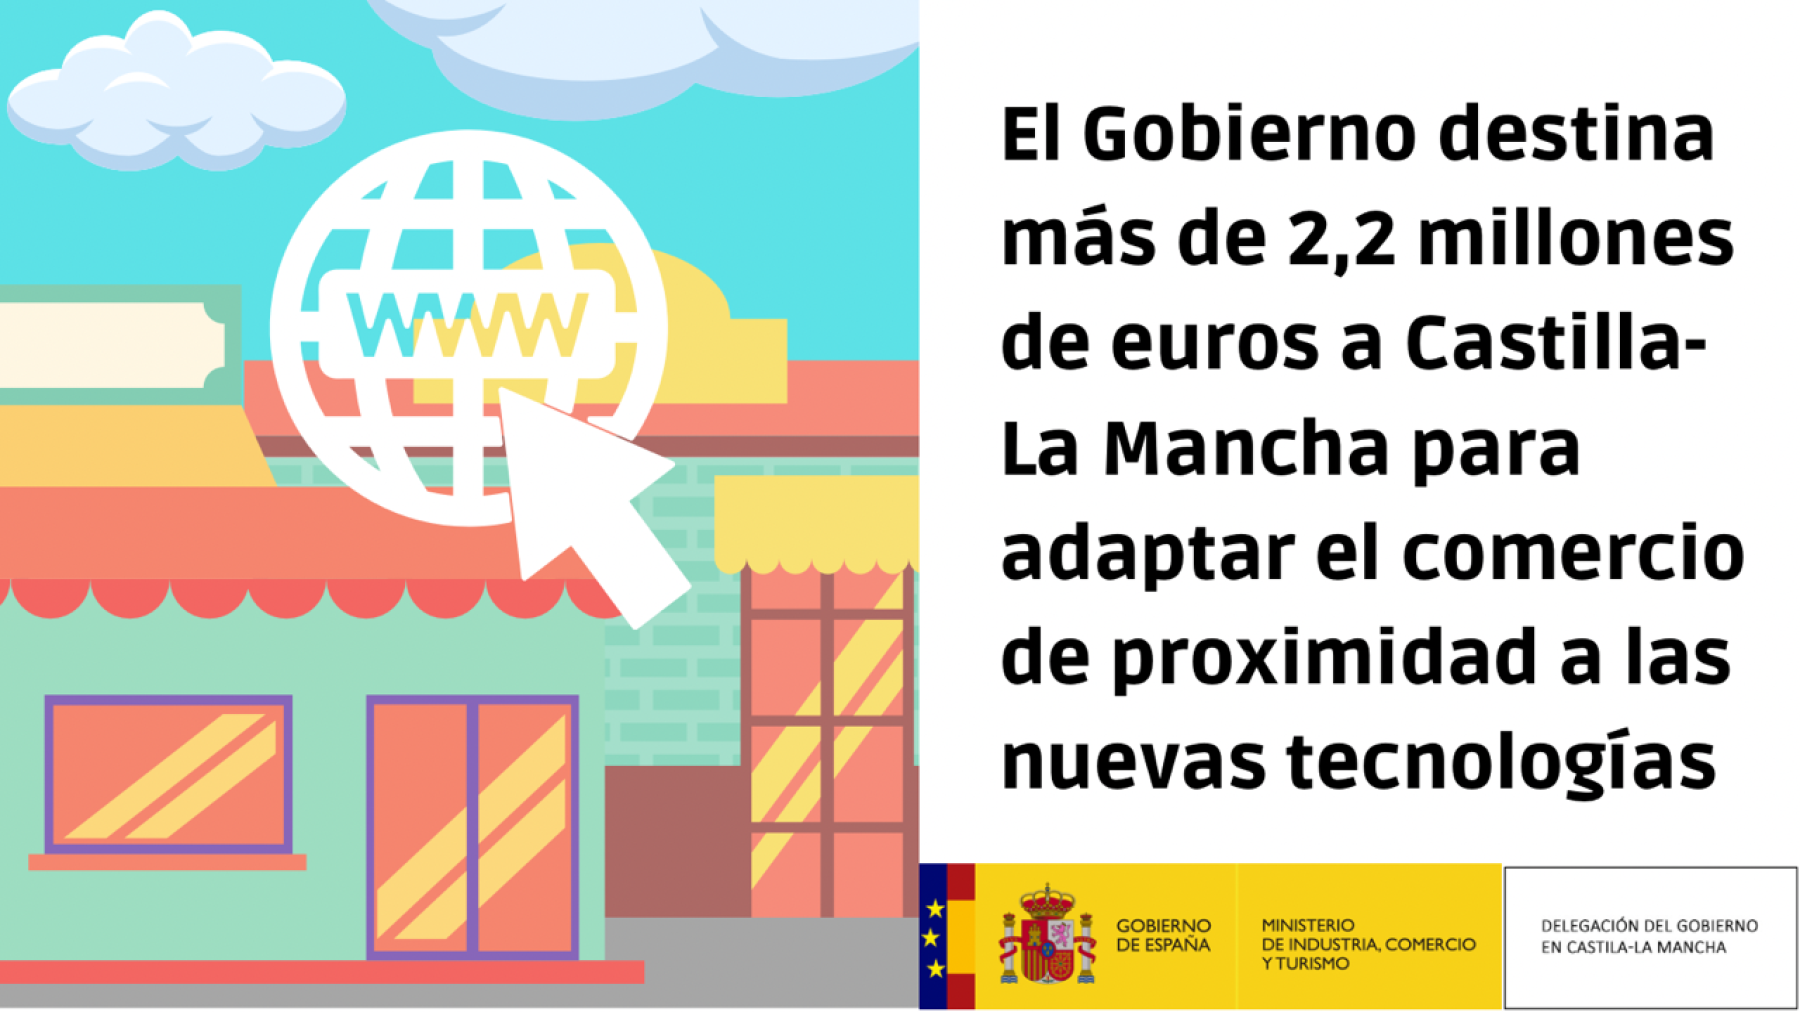 El Gobierno destina más de 2,2 millones de euros a Castilla-La Mancha para adaptar el comercio de proximidad a las nuevas tecnologías